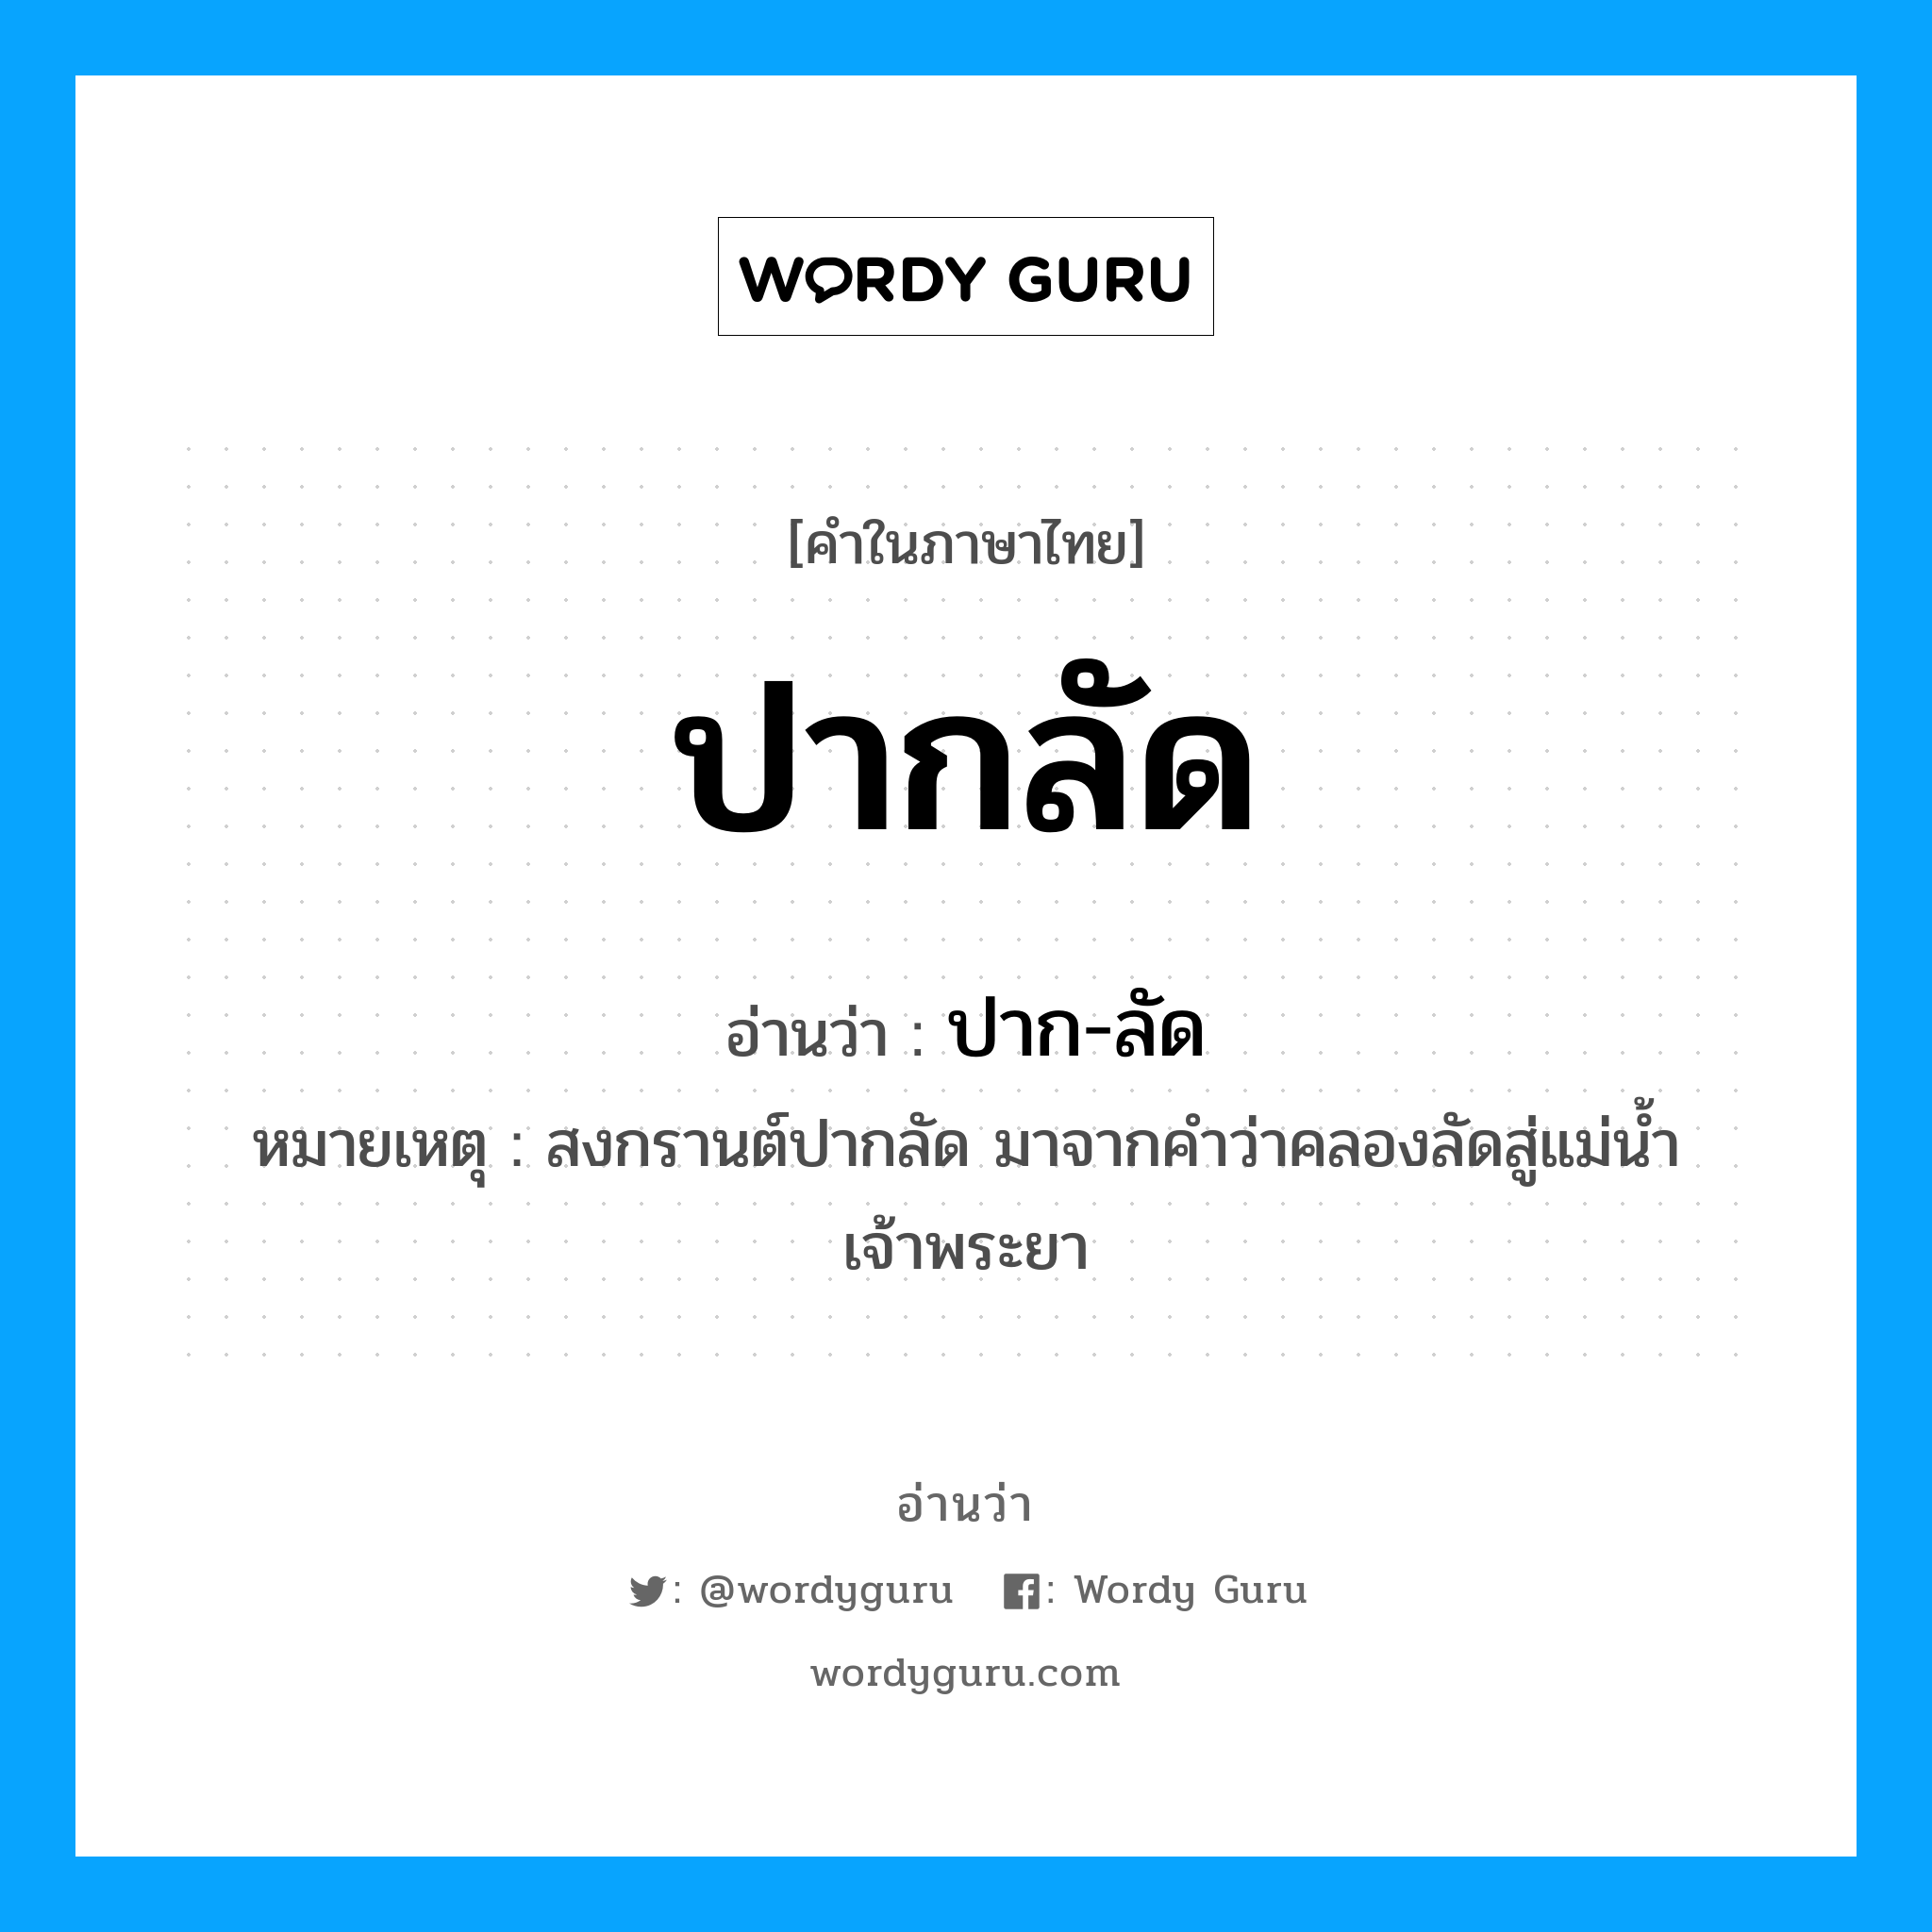 ปาก-ลัด เป็นคำอ่านของคำไหน?, คำในภาษาไทย ปาก-ลัด อ่านว่า ปากลัด หมายเหตุ สงกรานต์ปากลัด มาจากคำว่าคลองลัดสู่แม่น้ำเจ้าพระยา